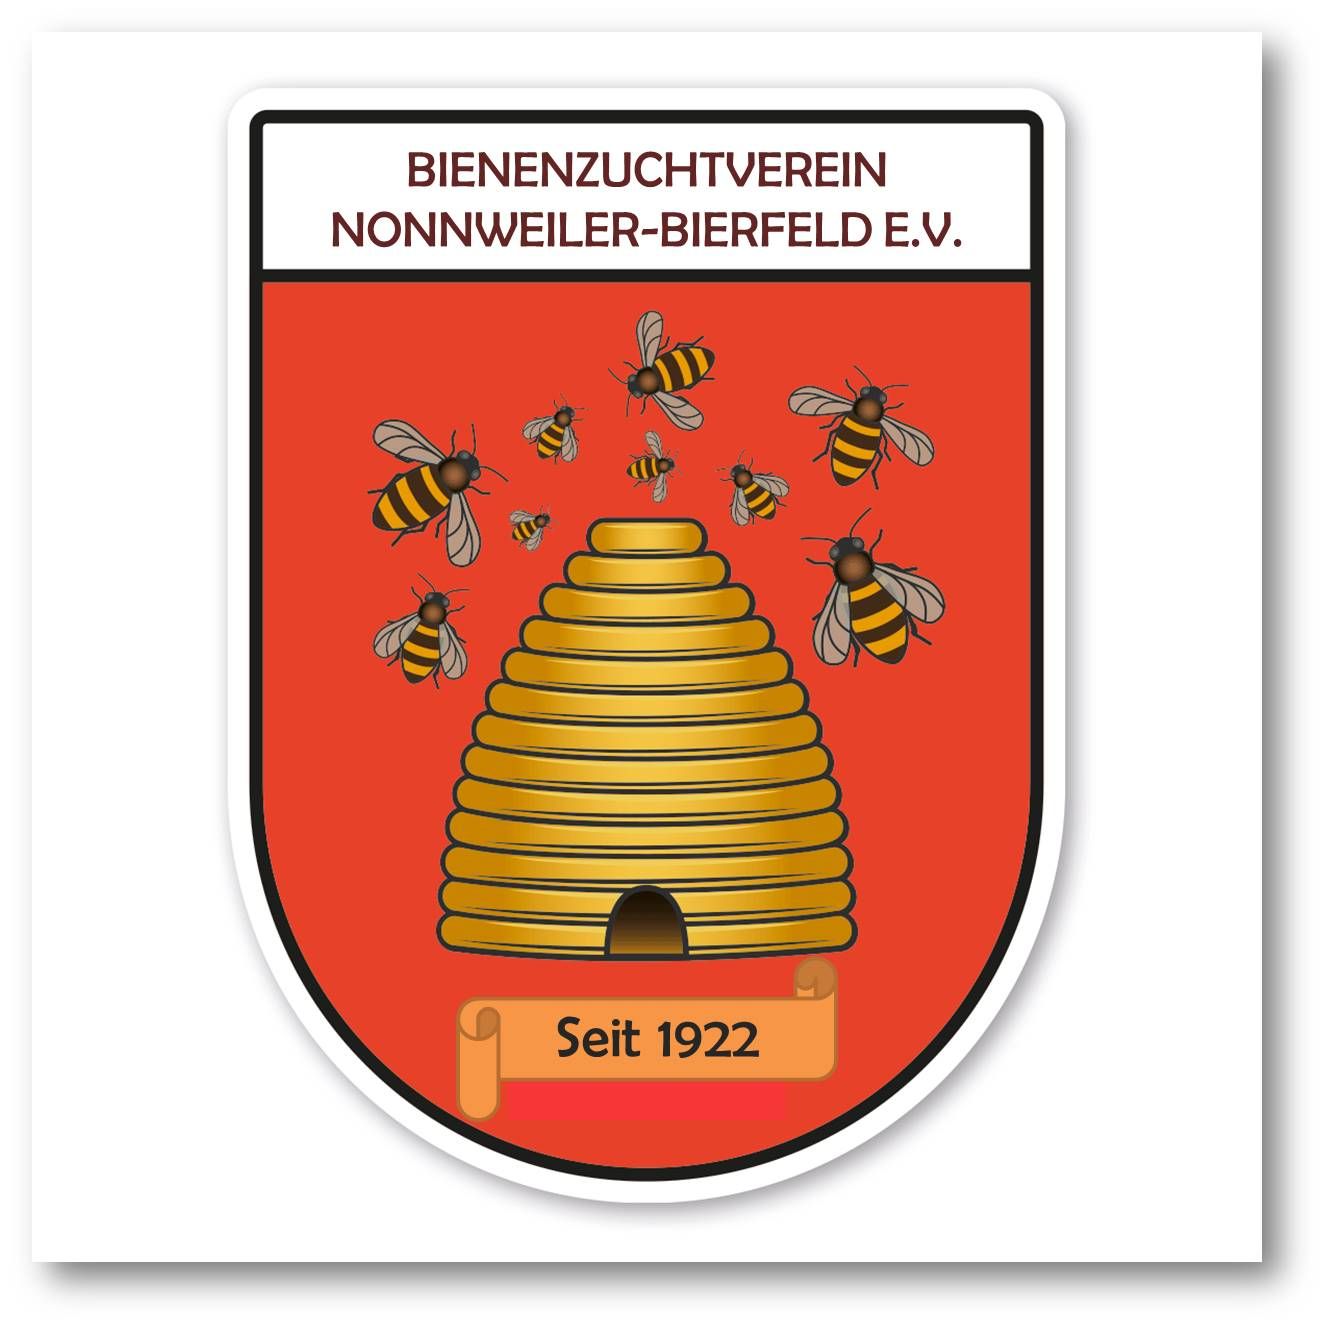 Profilbild des Vereins 'BIENENZUCHTVEREIN NONNWEILER - BIERFELD E.V.'